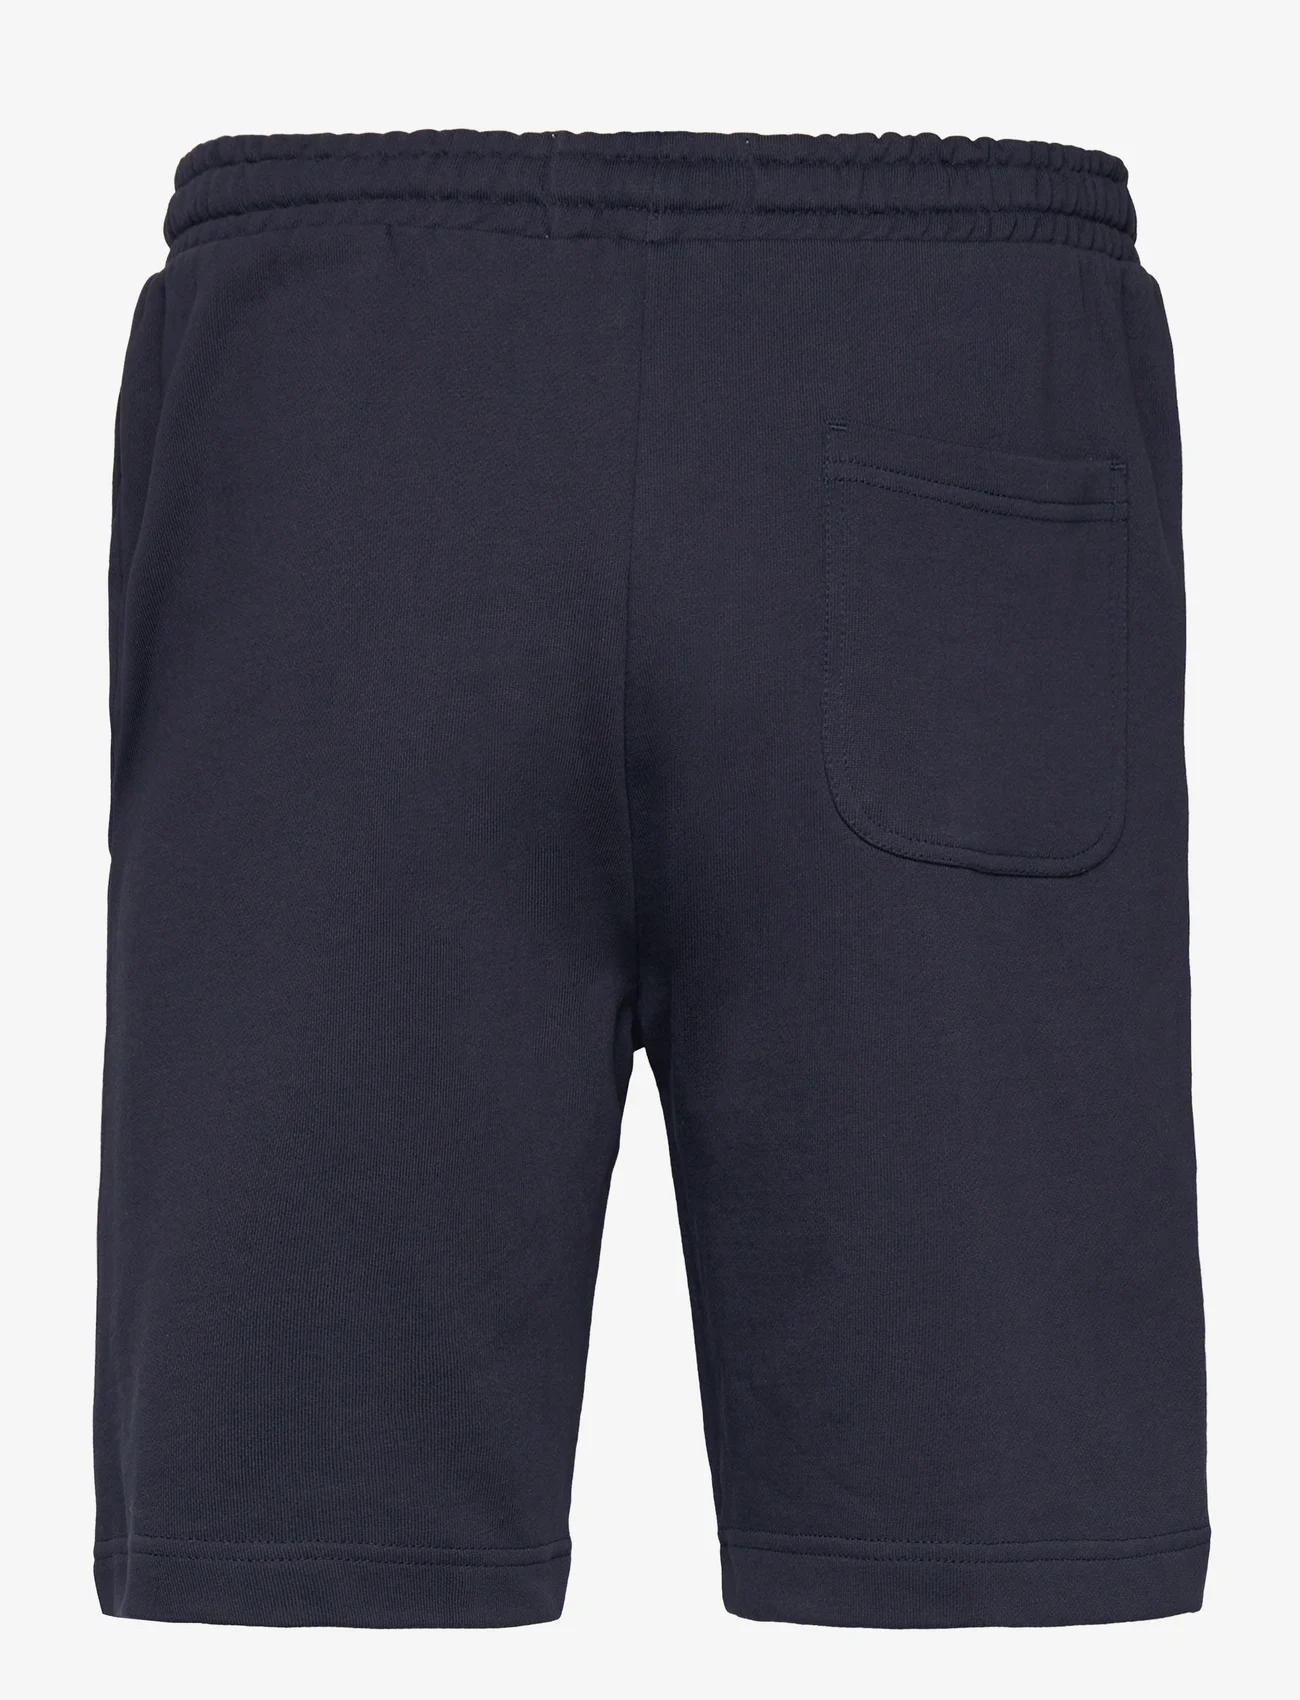 Lyle & Scott - Sweat Short - shorts - dark navy - 1